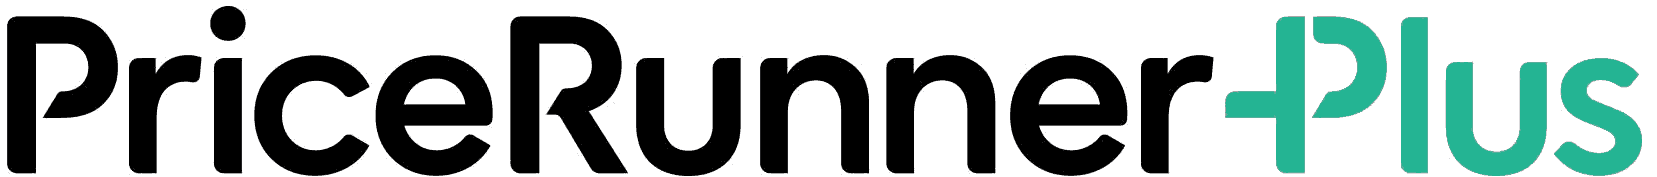 Pricerunner Plus logo